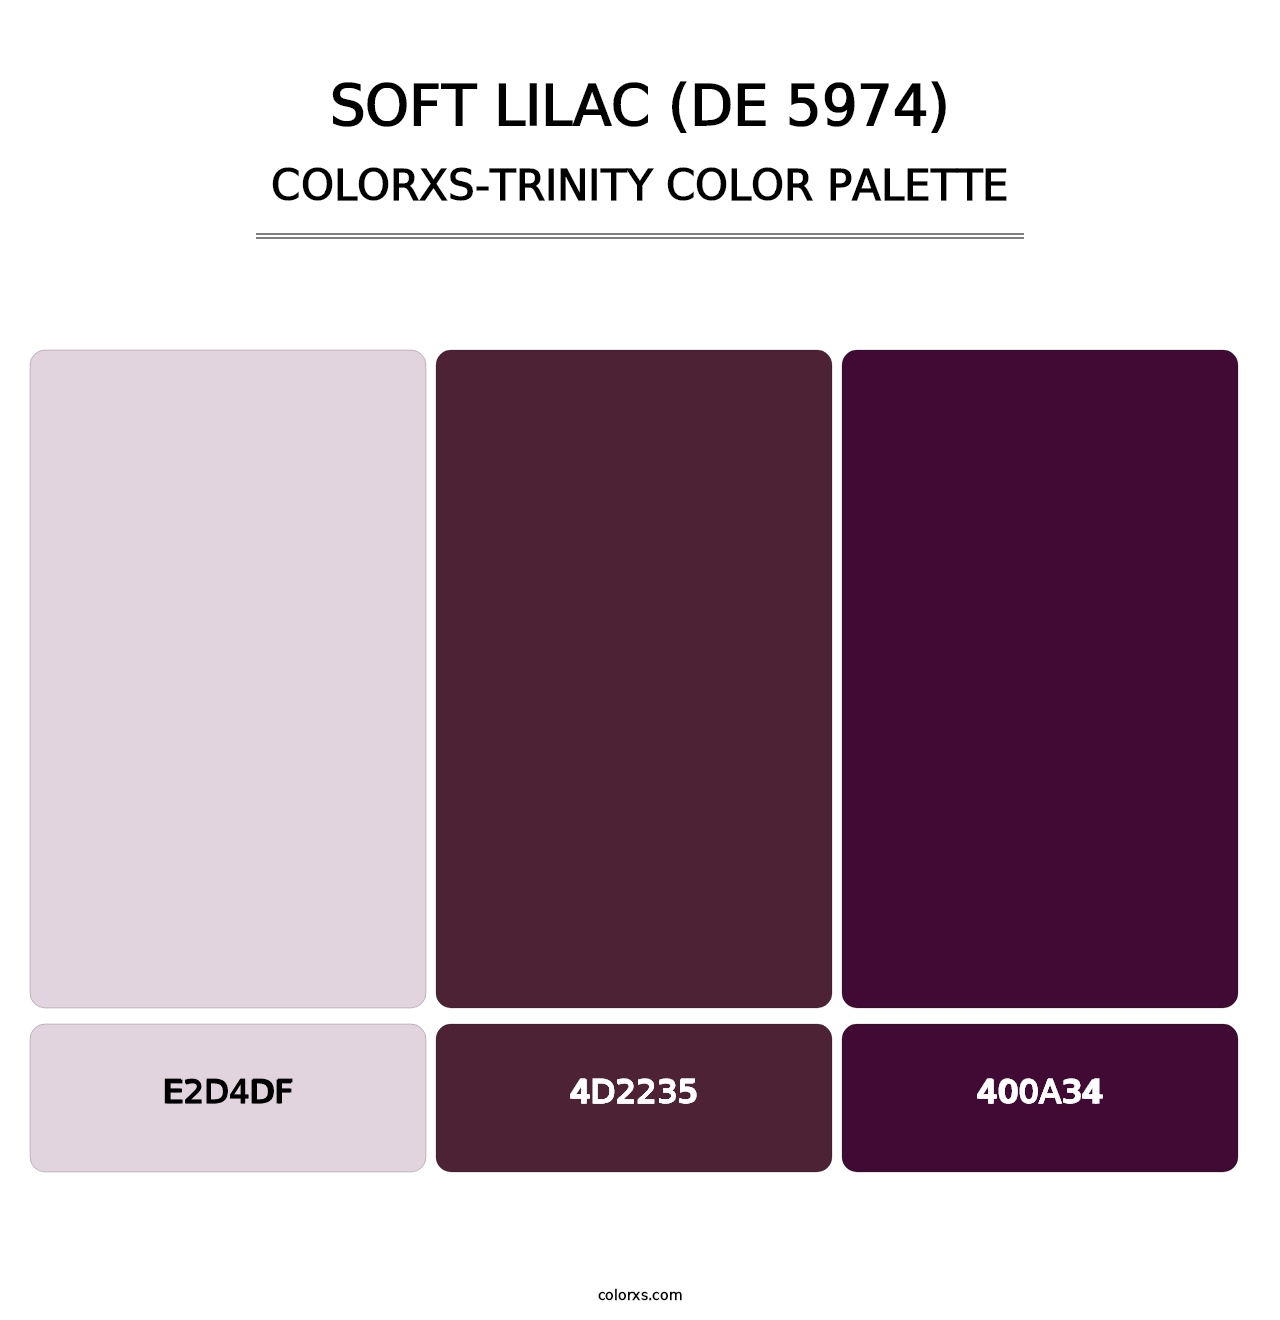 Soft Lilac (DE 5974) - Colorxs Trinity Palette